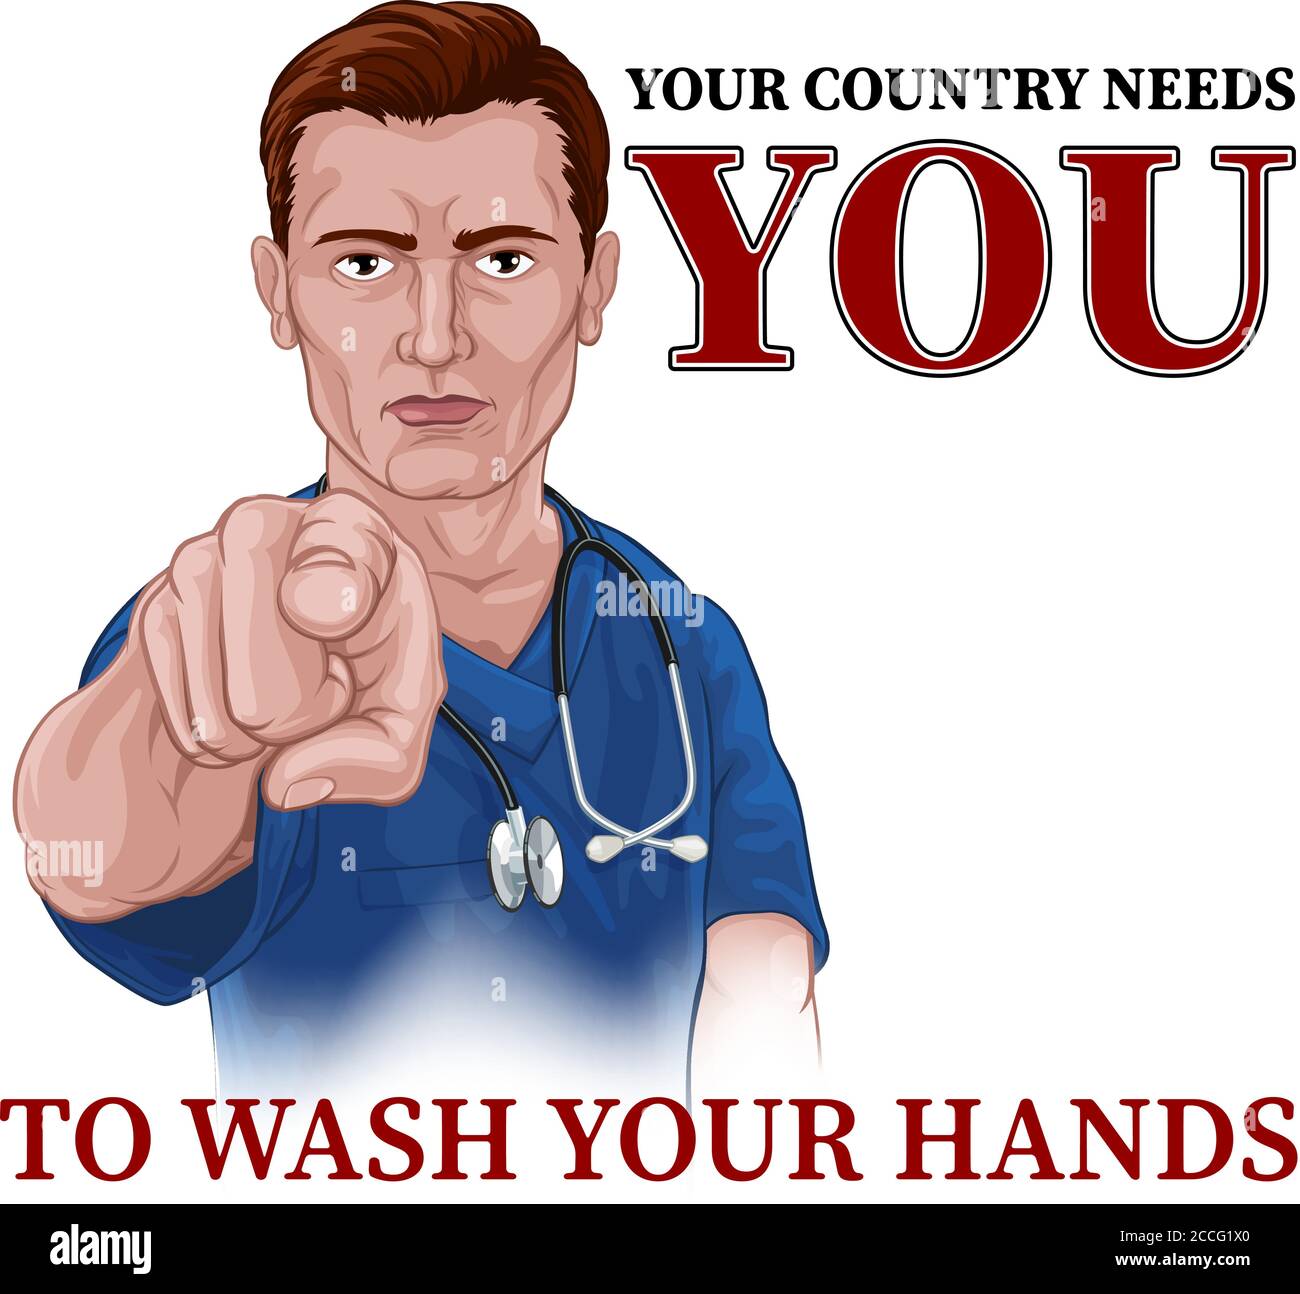 Krankenschwester Arzt Zeigt Ihr Land Braucht Sie Stock Vektor